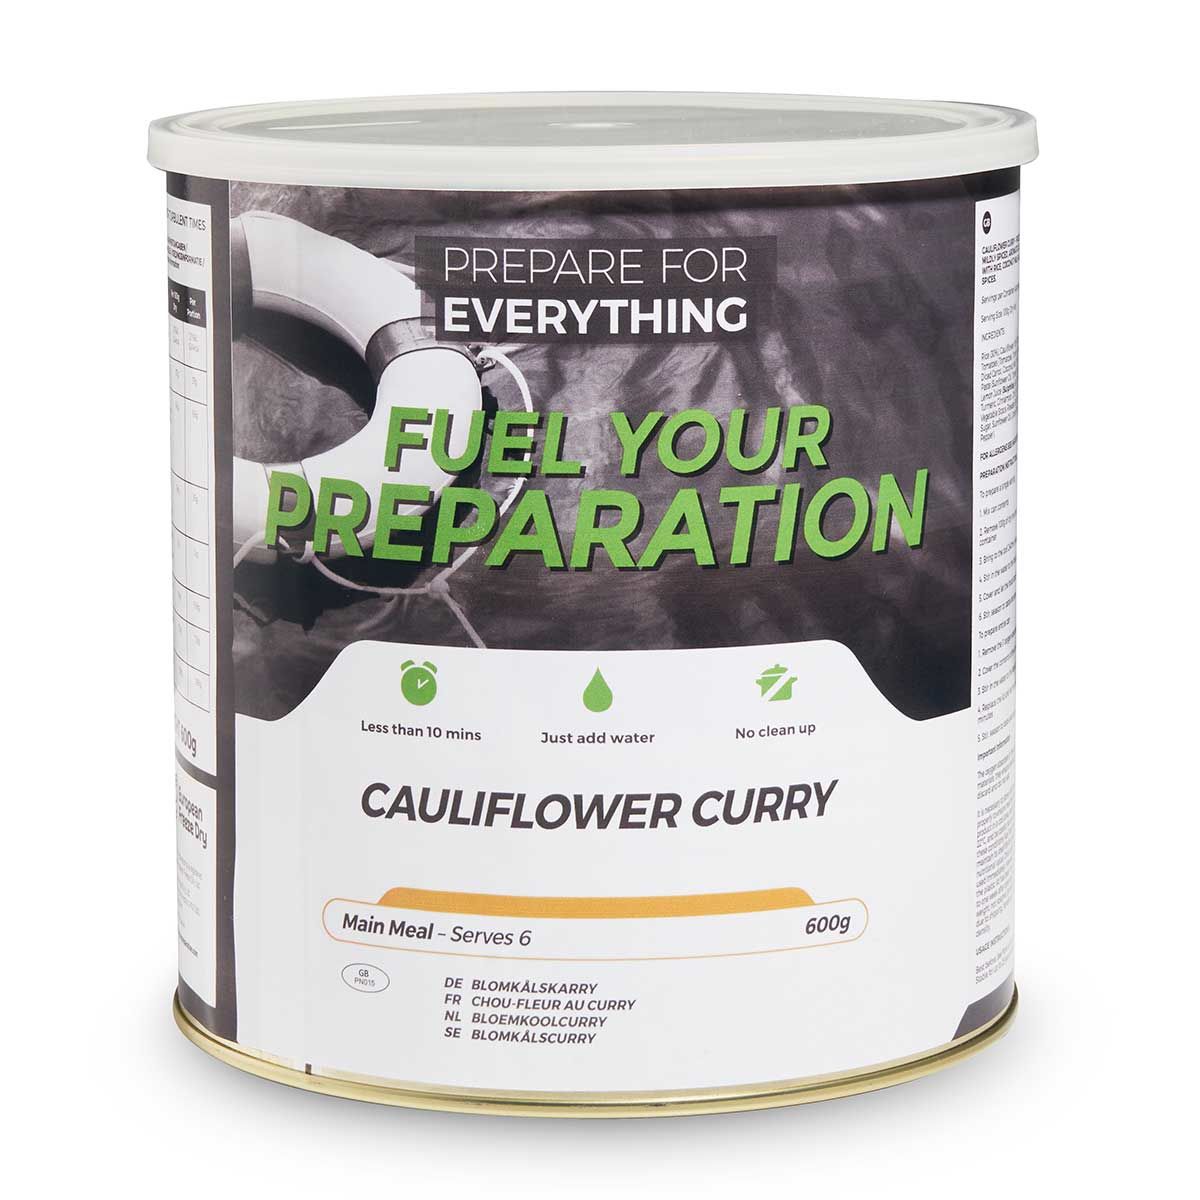 Cauliflower curry - 25 years